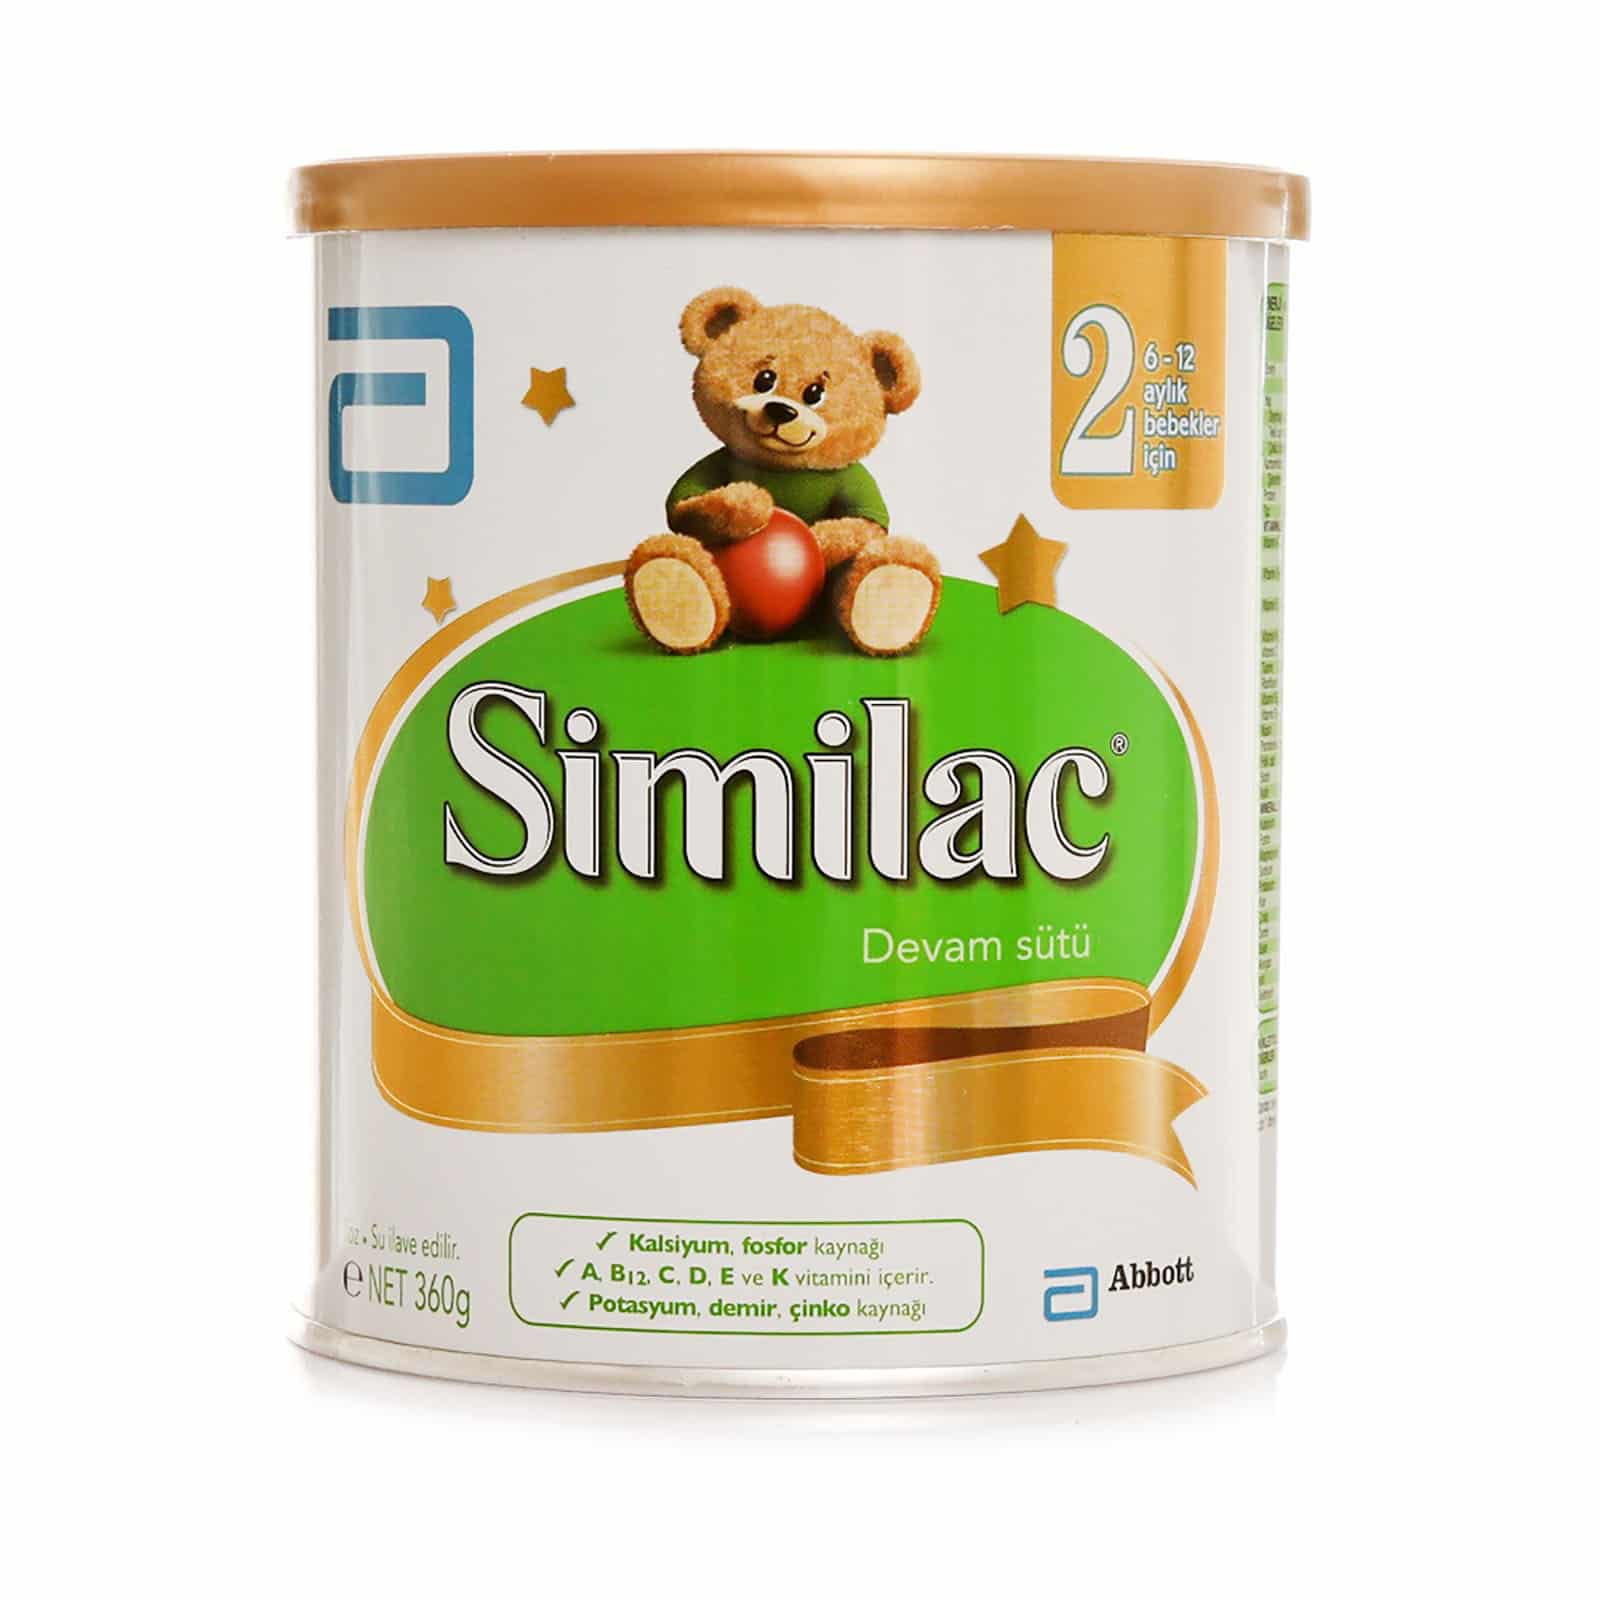 Similac Devam Sütü ürün resmi